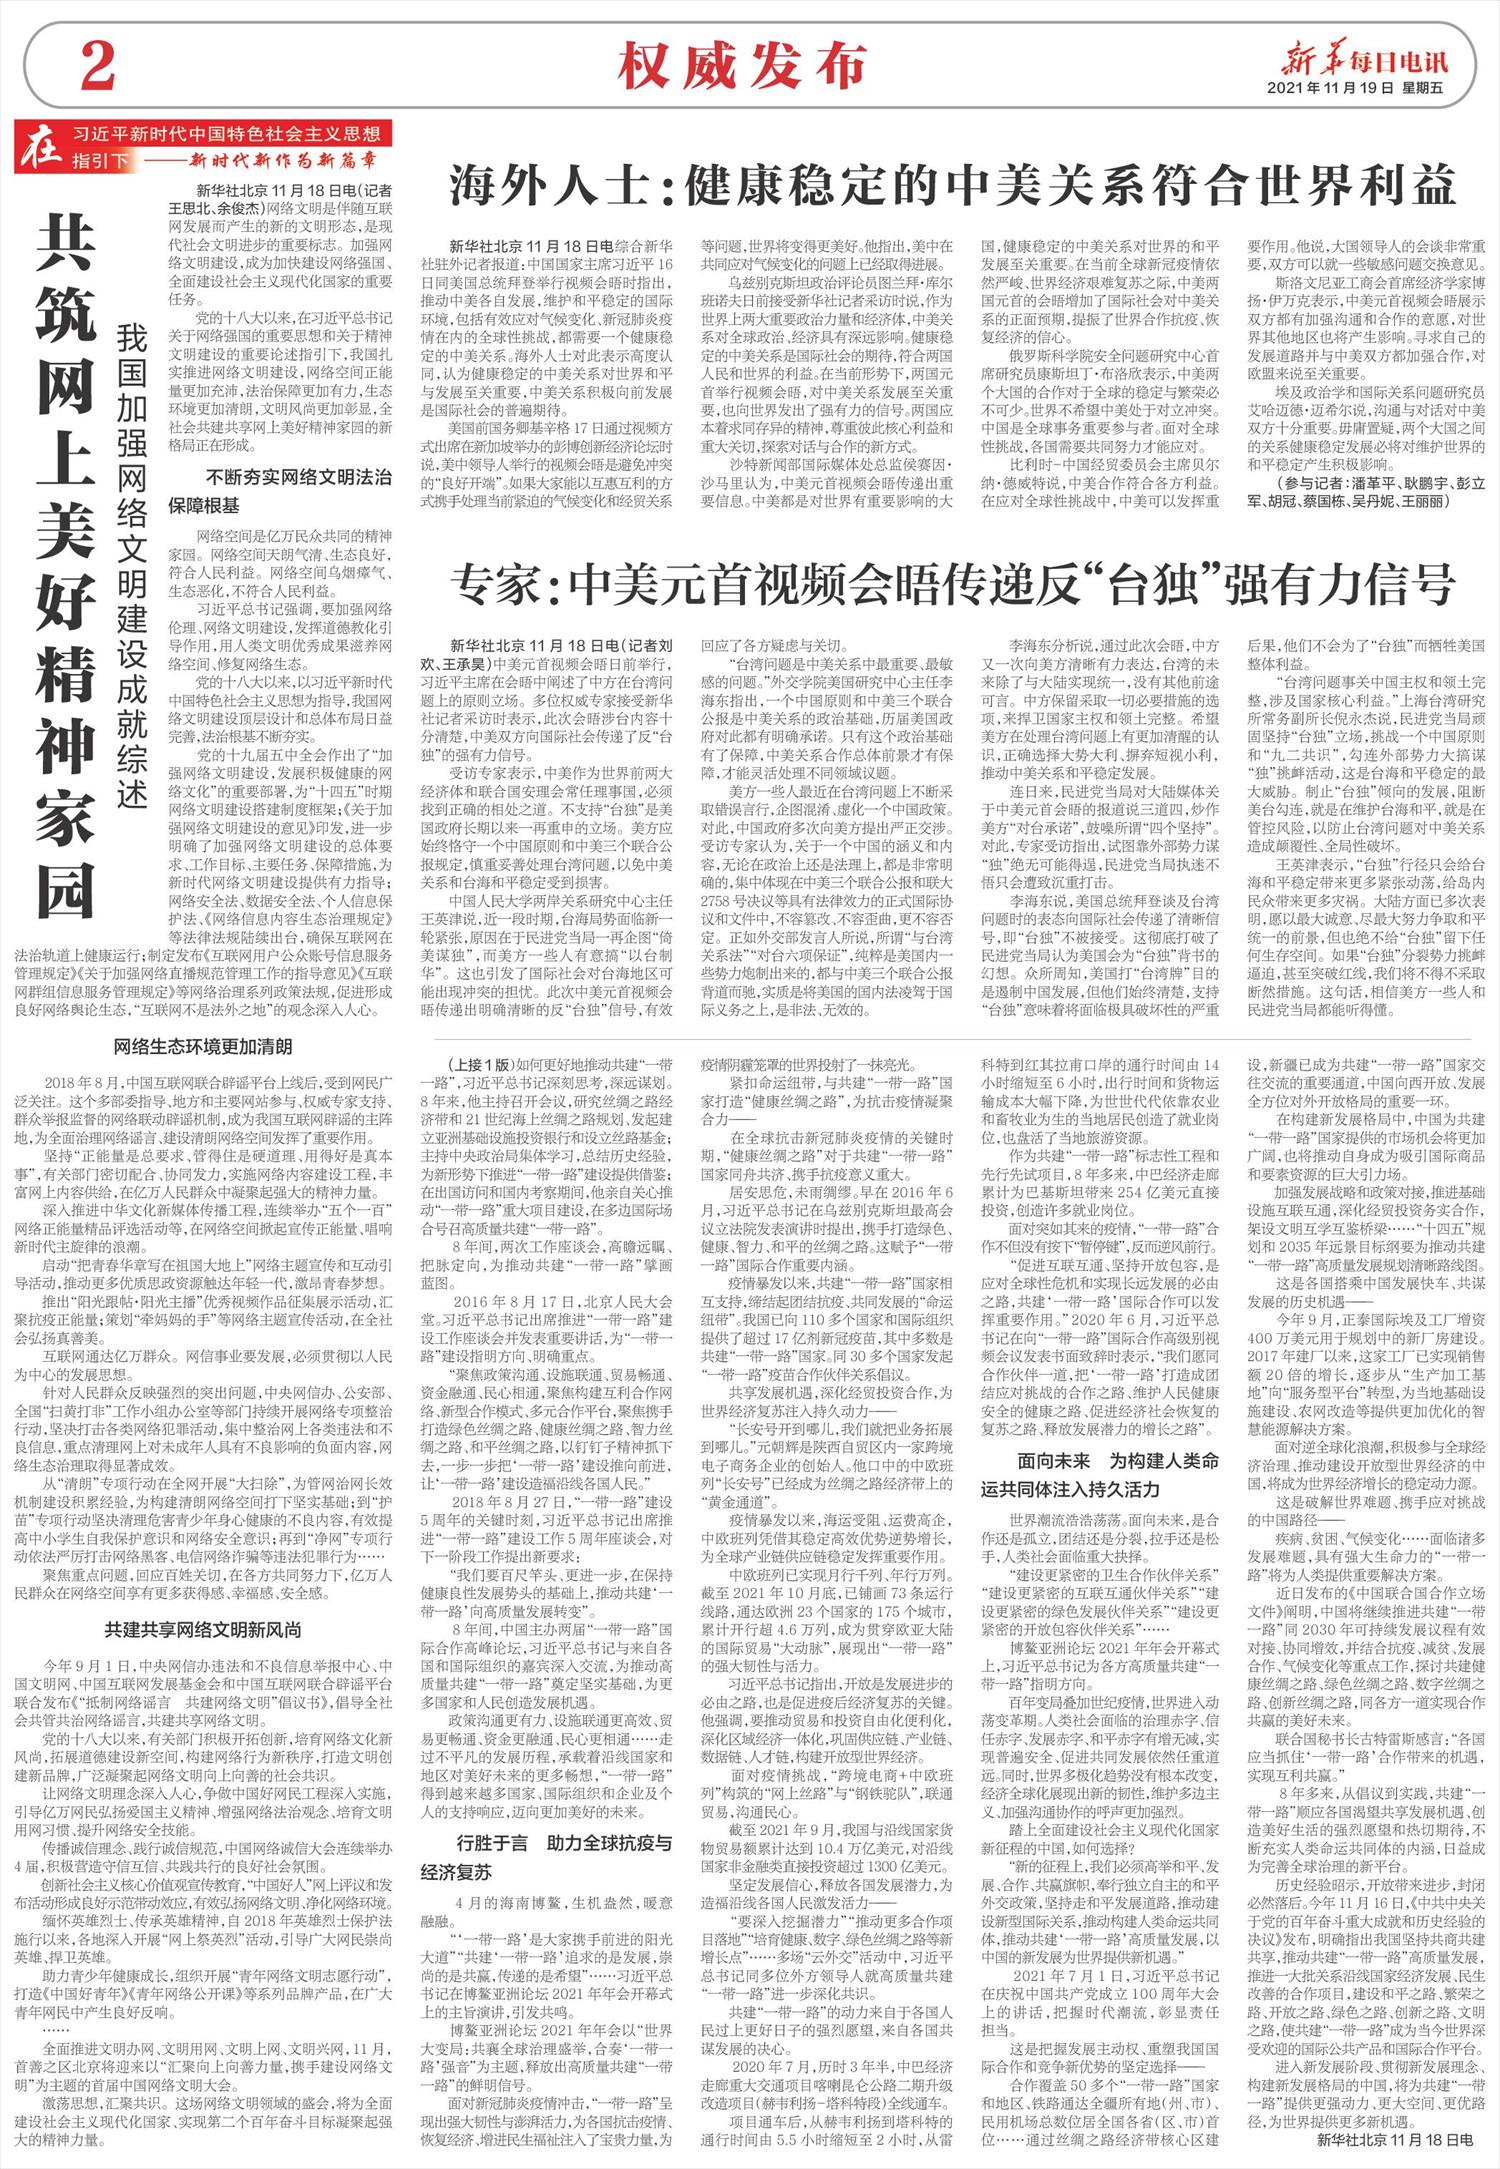 新华每日电讯-微报纸-2021年11月19日